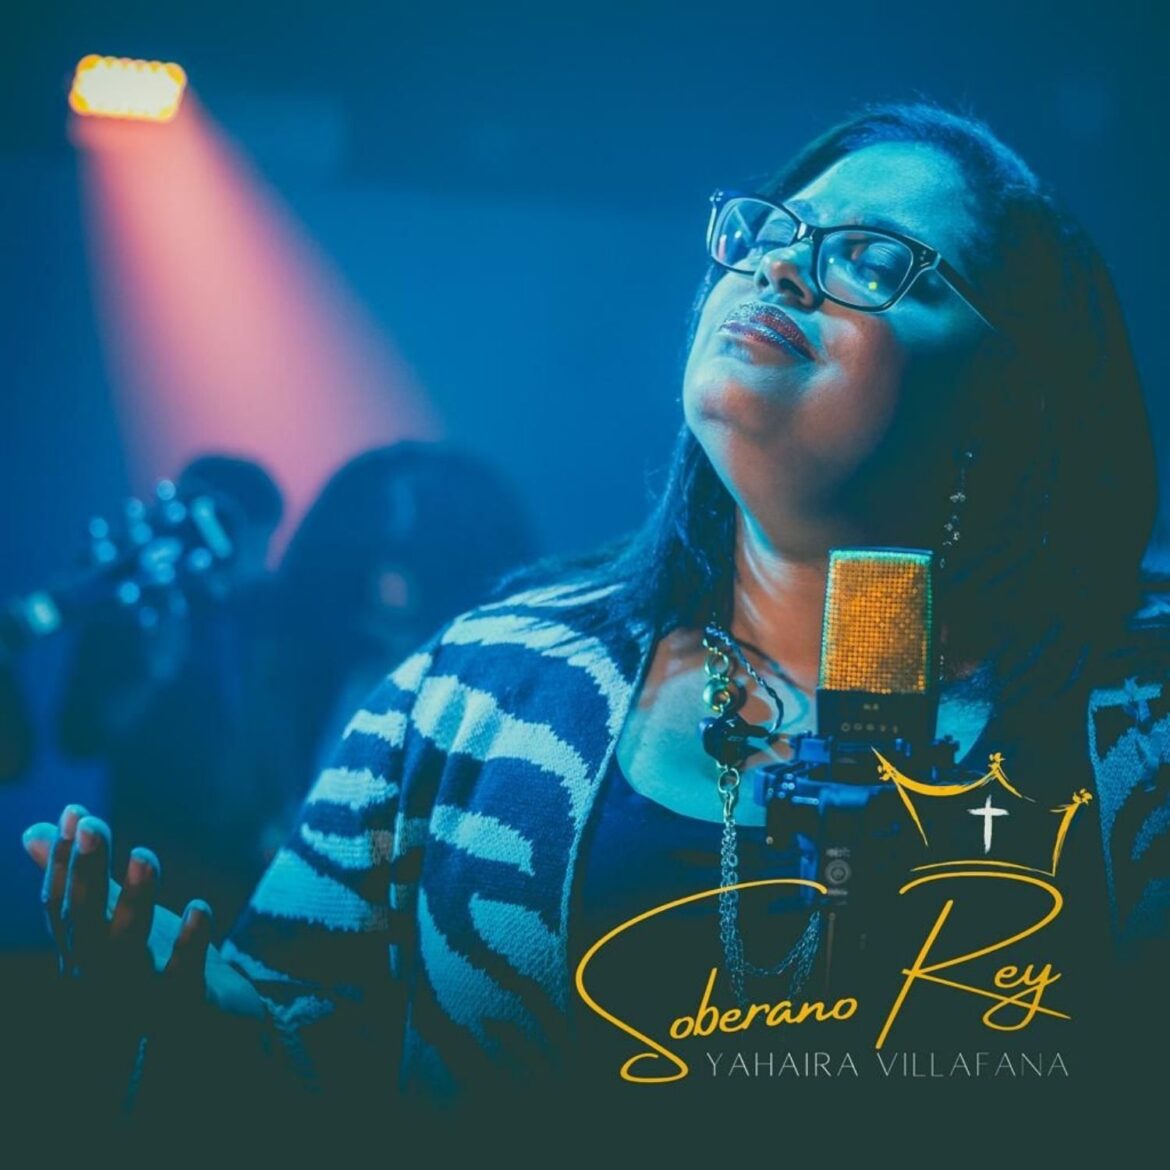 La talentosa cantautora dominicana Yahaira Villafana inicia el 2022 con su primer sencillo titulado “Soberano Rey”